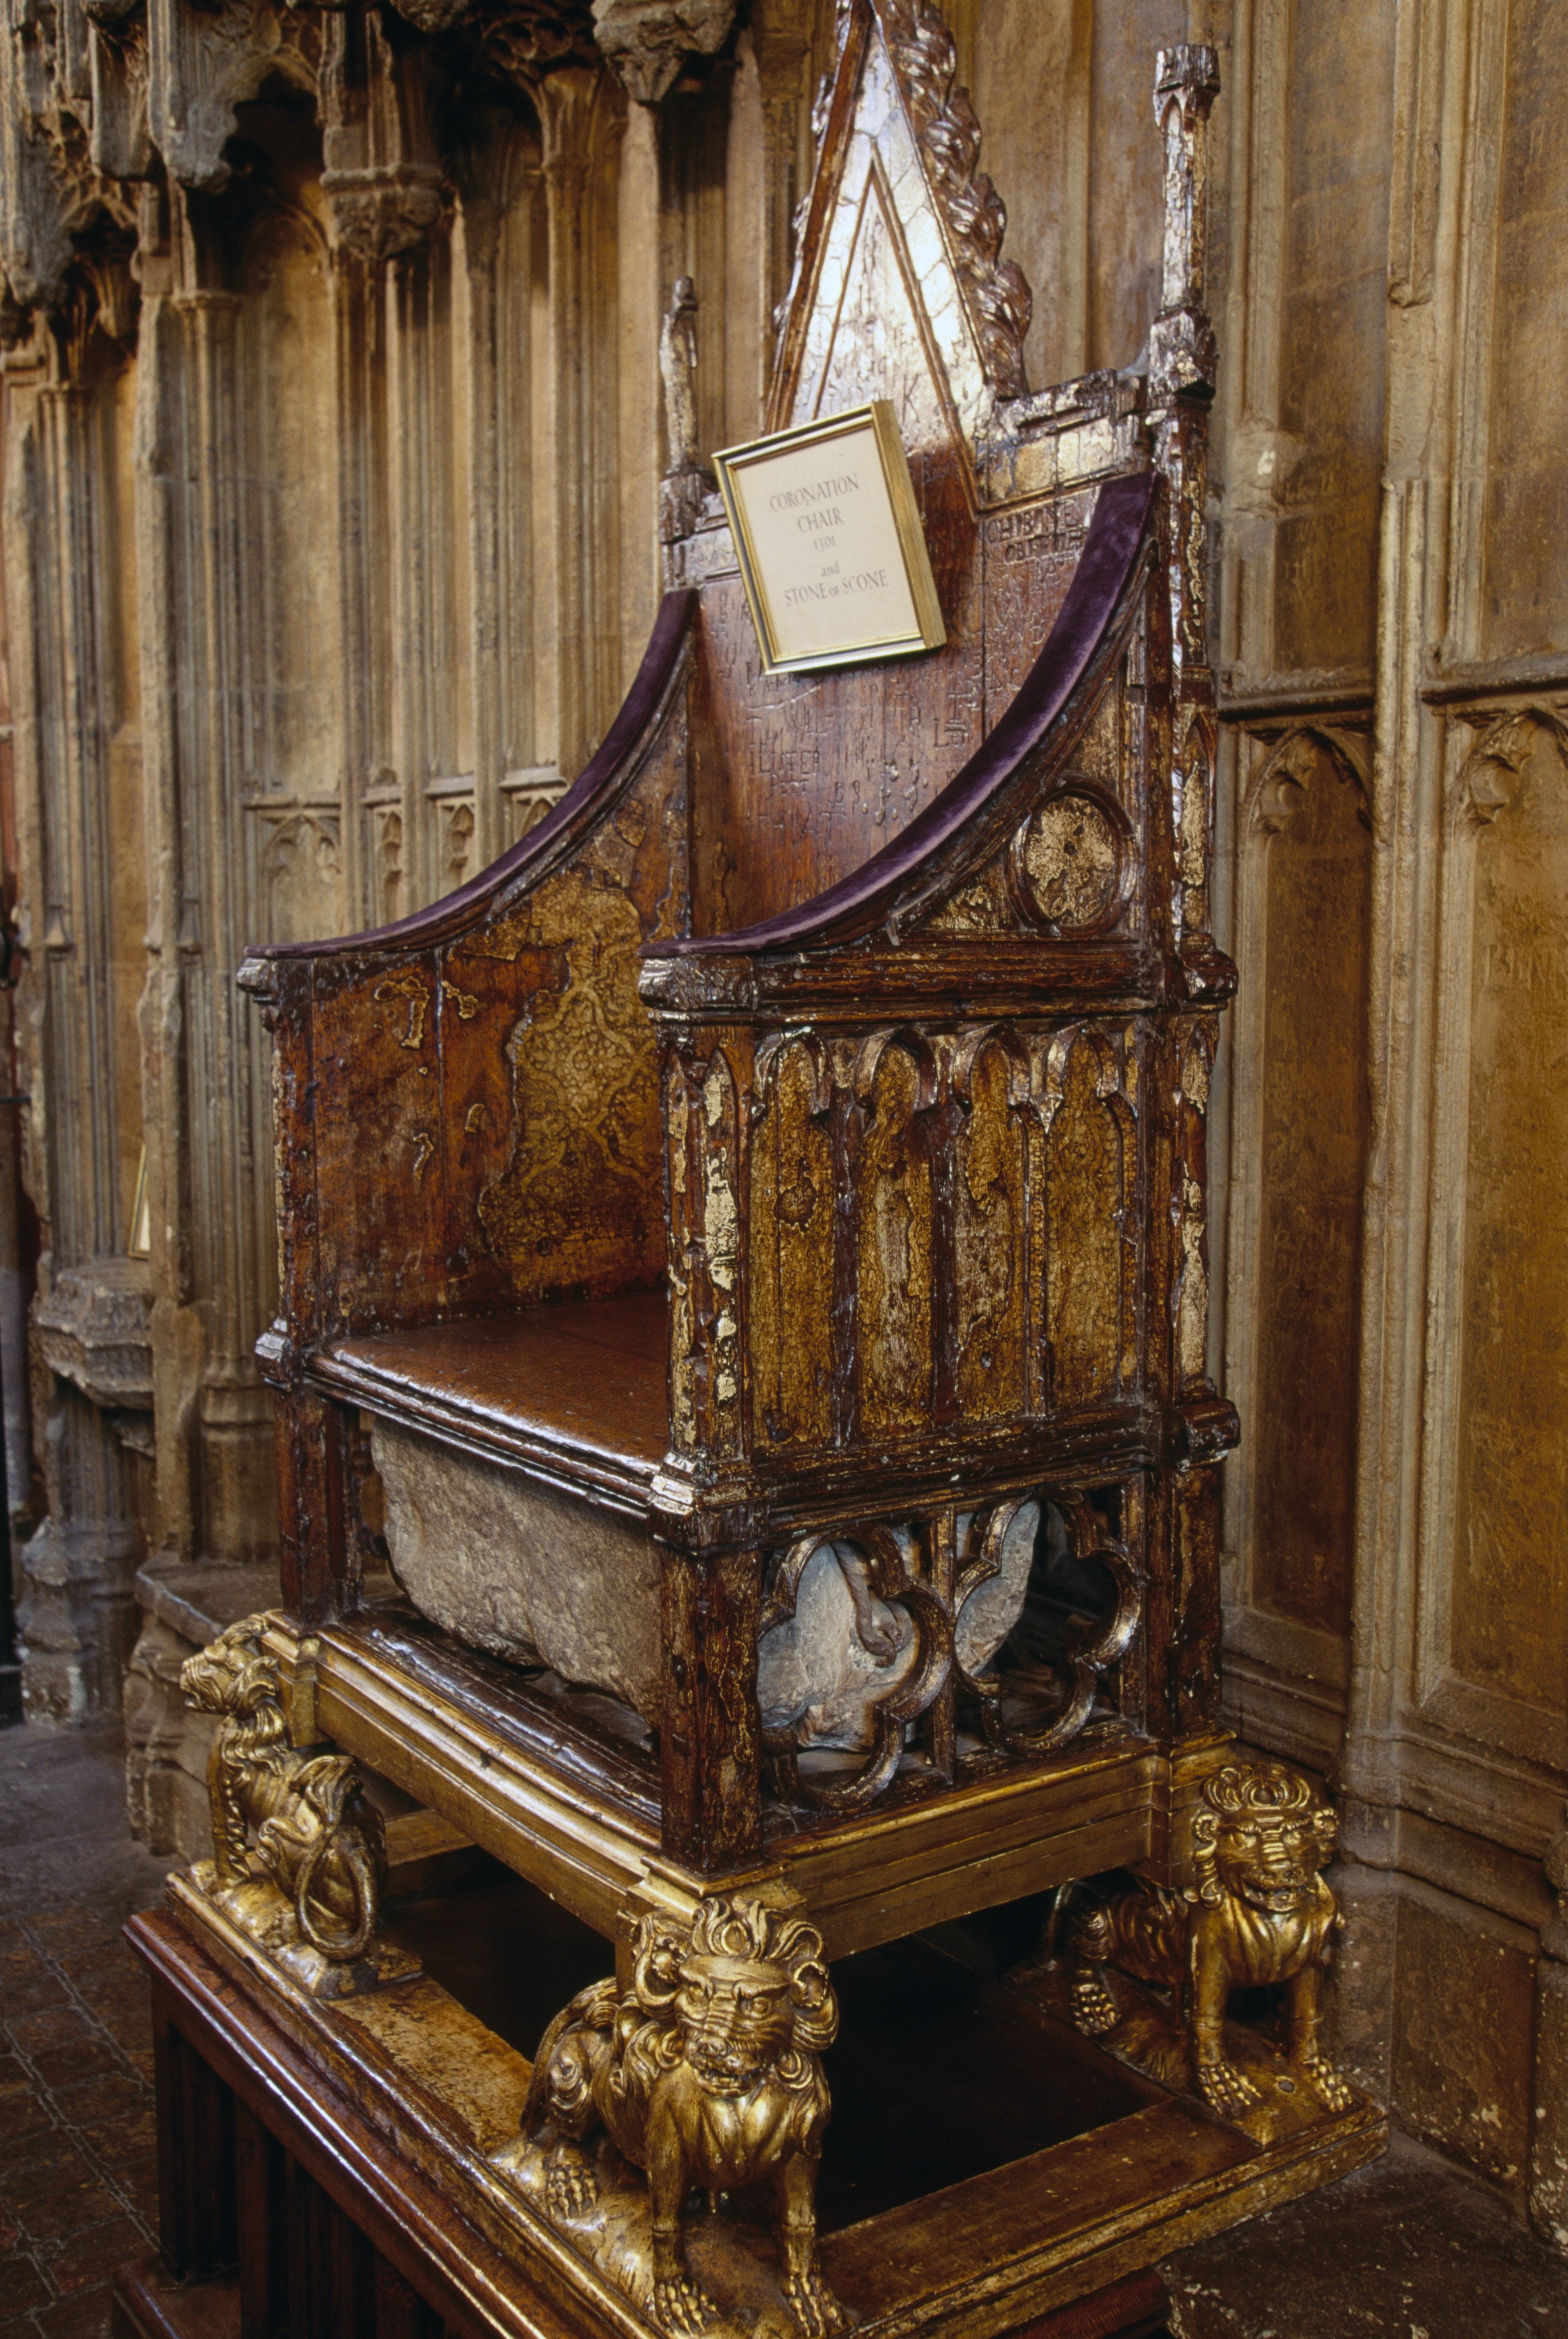 La silla de la coronación, o la silla del rey Eduardo, trono de madera, la Abadía de Westminster